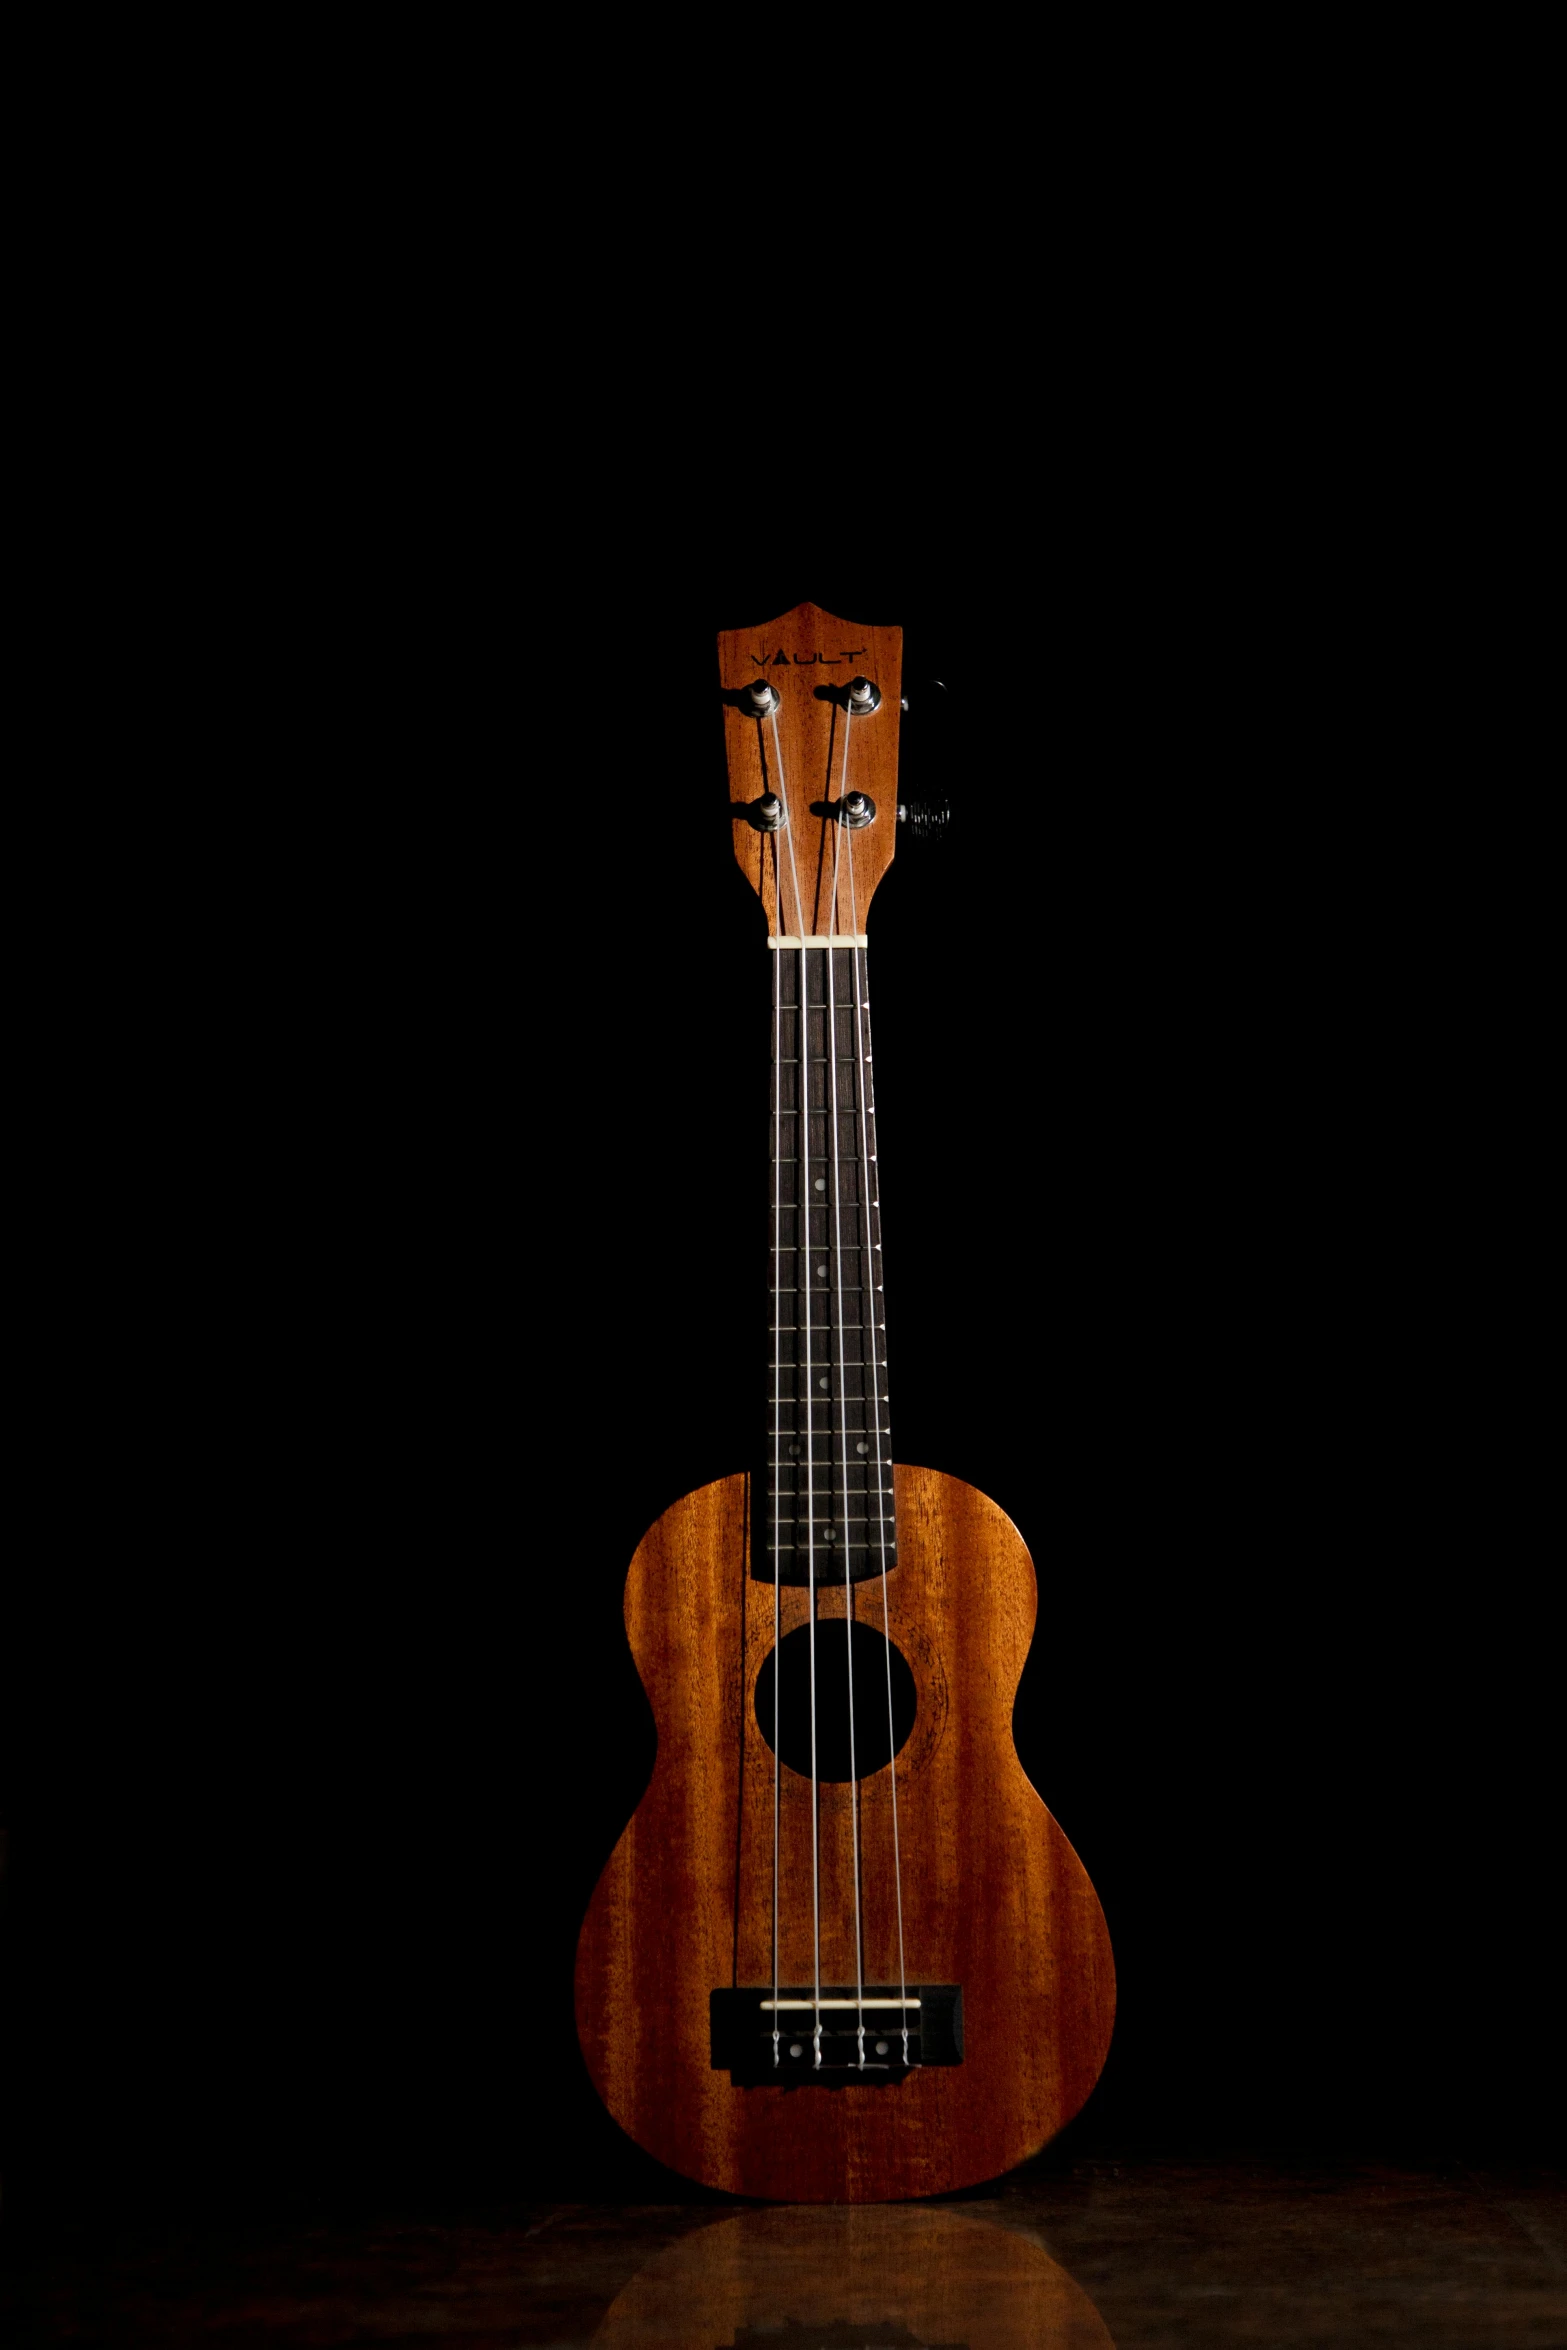 a ukulele on black background with dark space